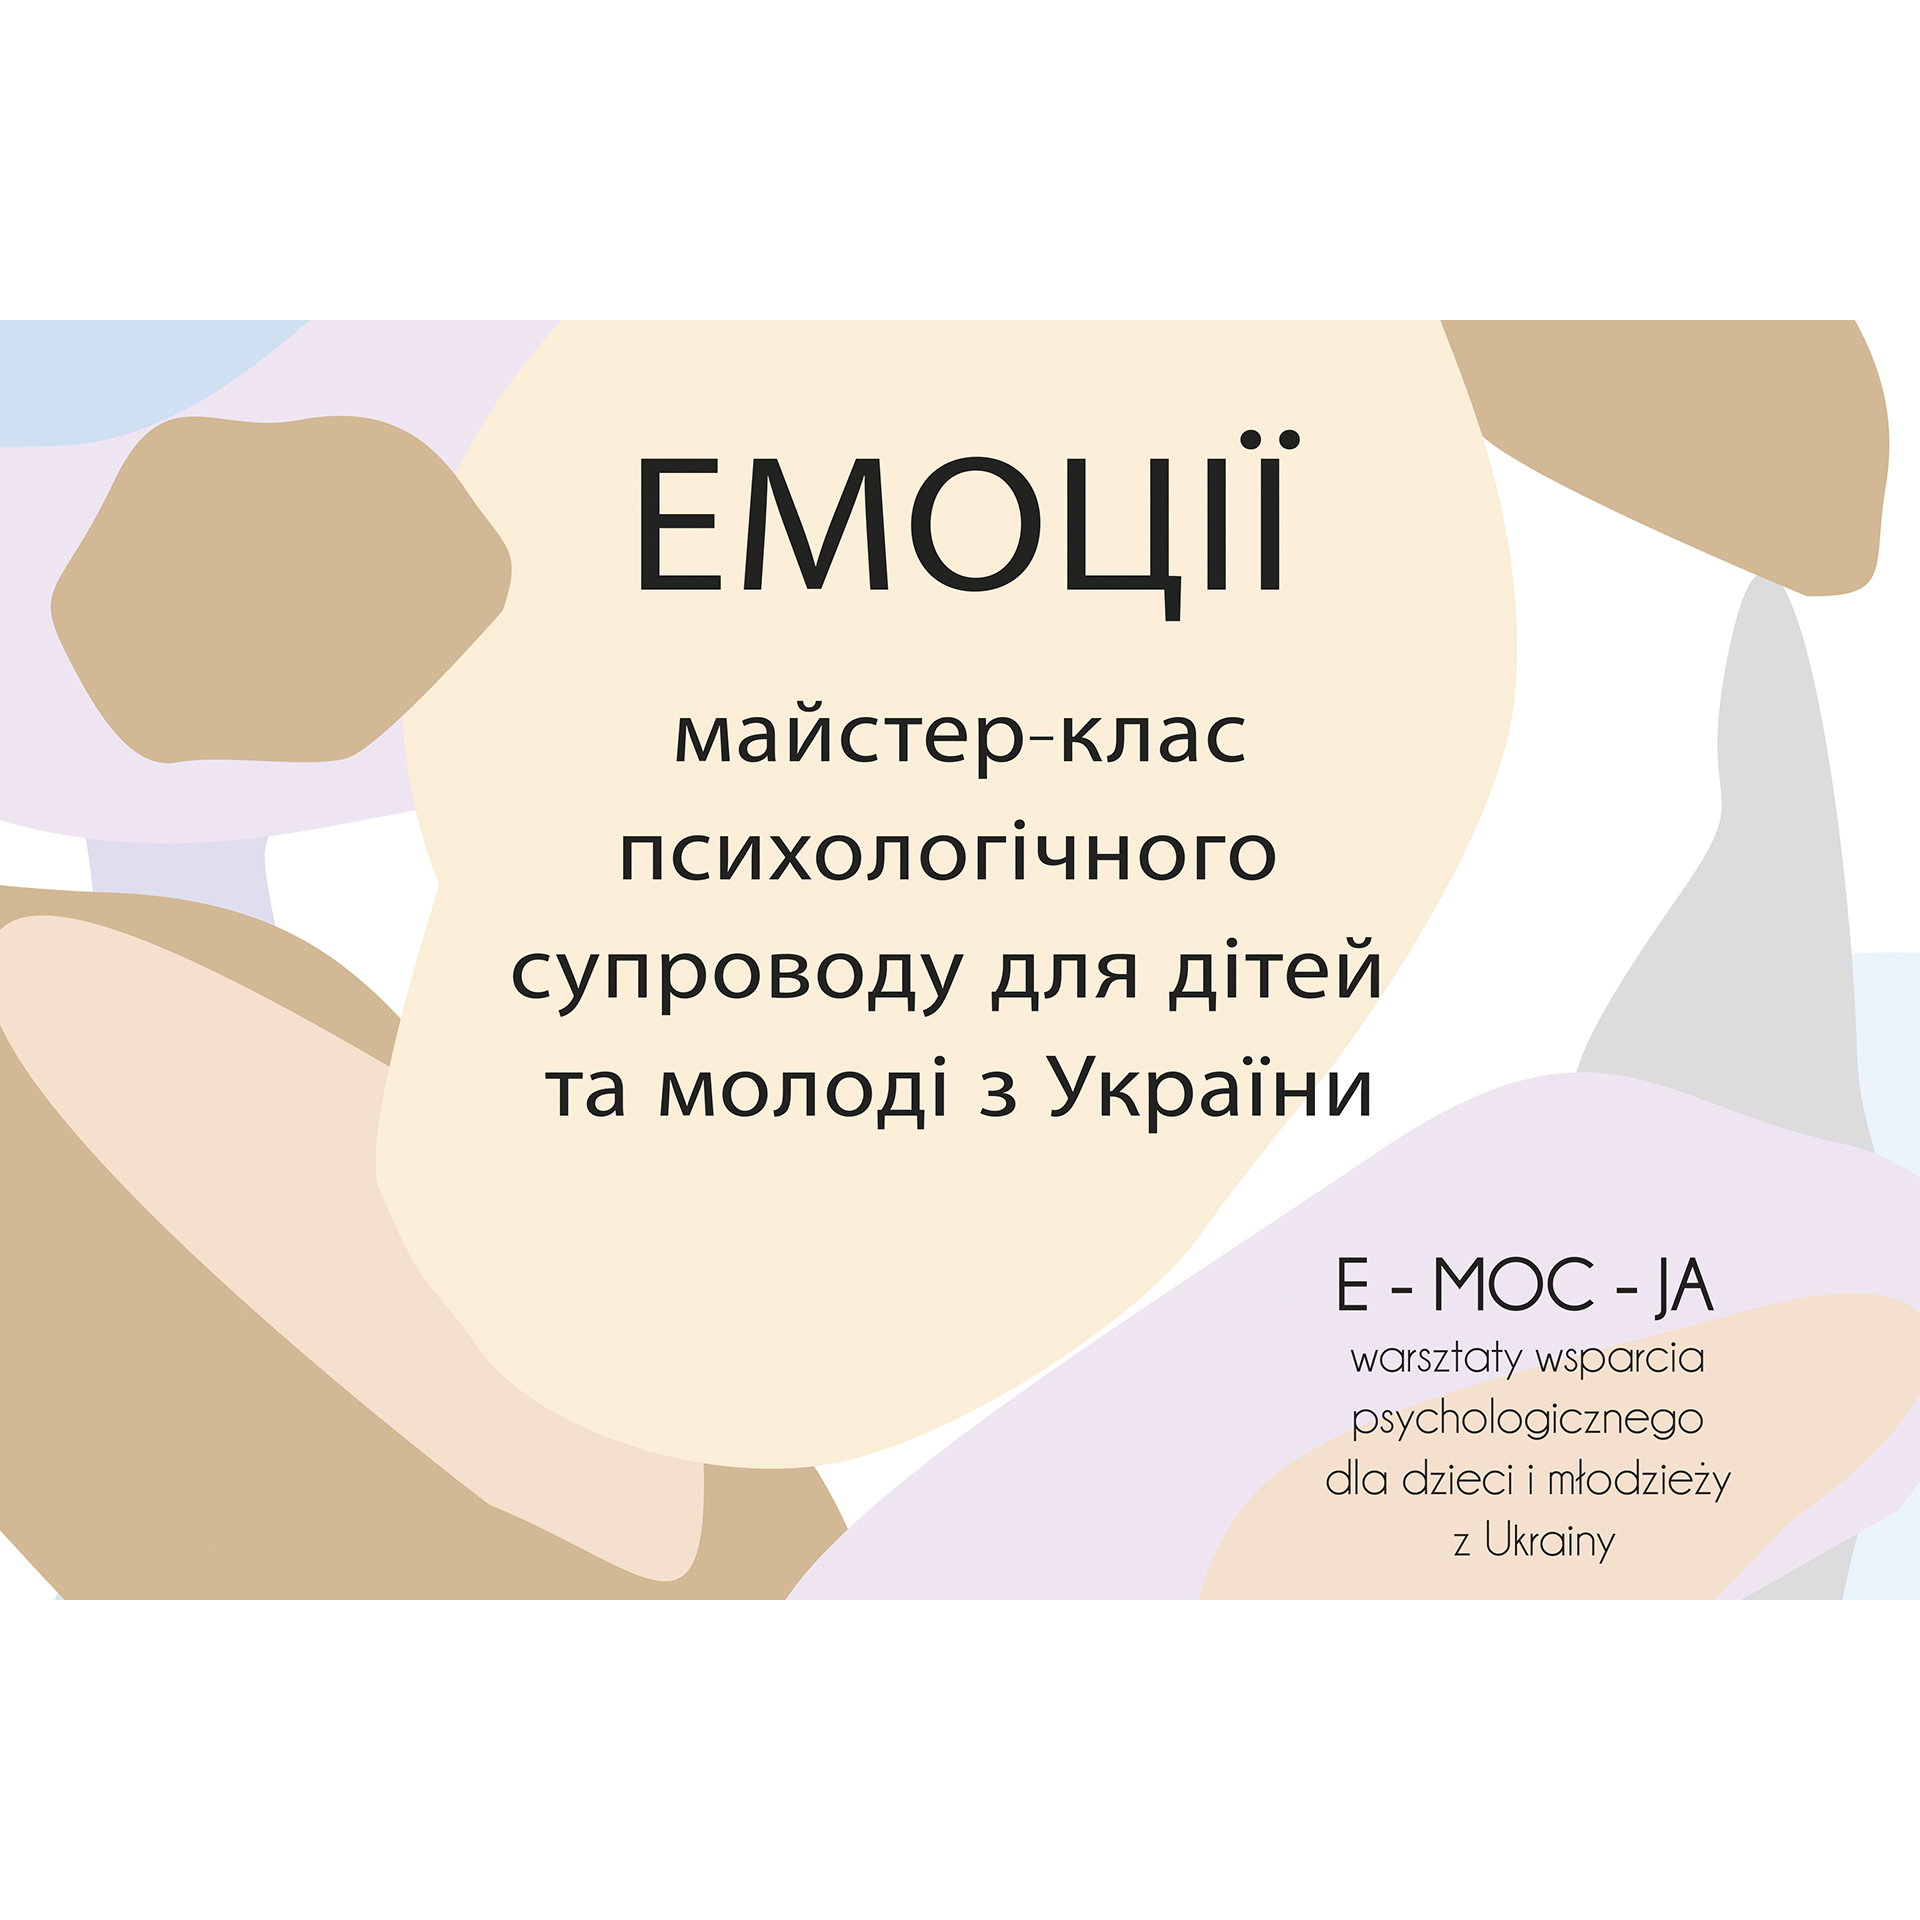 E-moc-ja | warsztaty wsparcia psychologicznego dla dzieci i młodzieży z Ukrainy